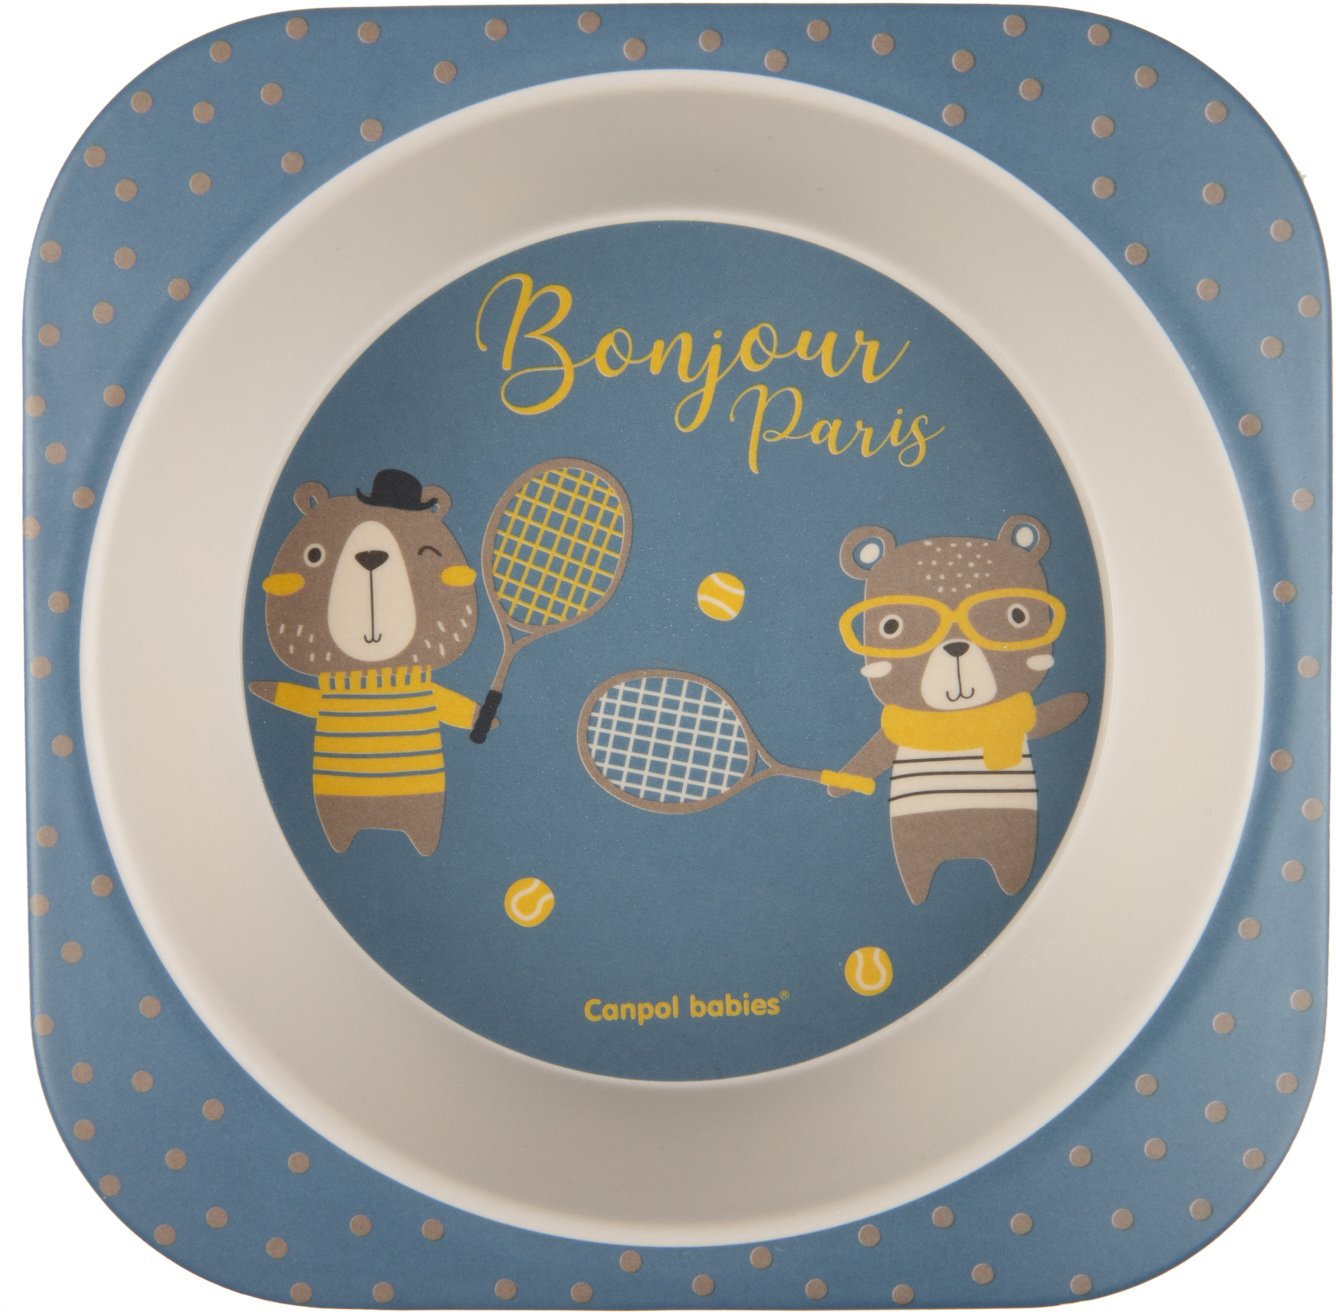 Набор посуды Canpol babies Bonjour Paris, 5 предметов, синий (9/227_blu) - фото 2